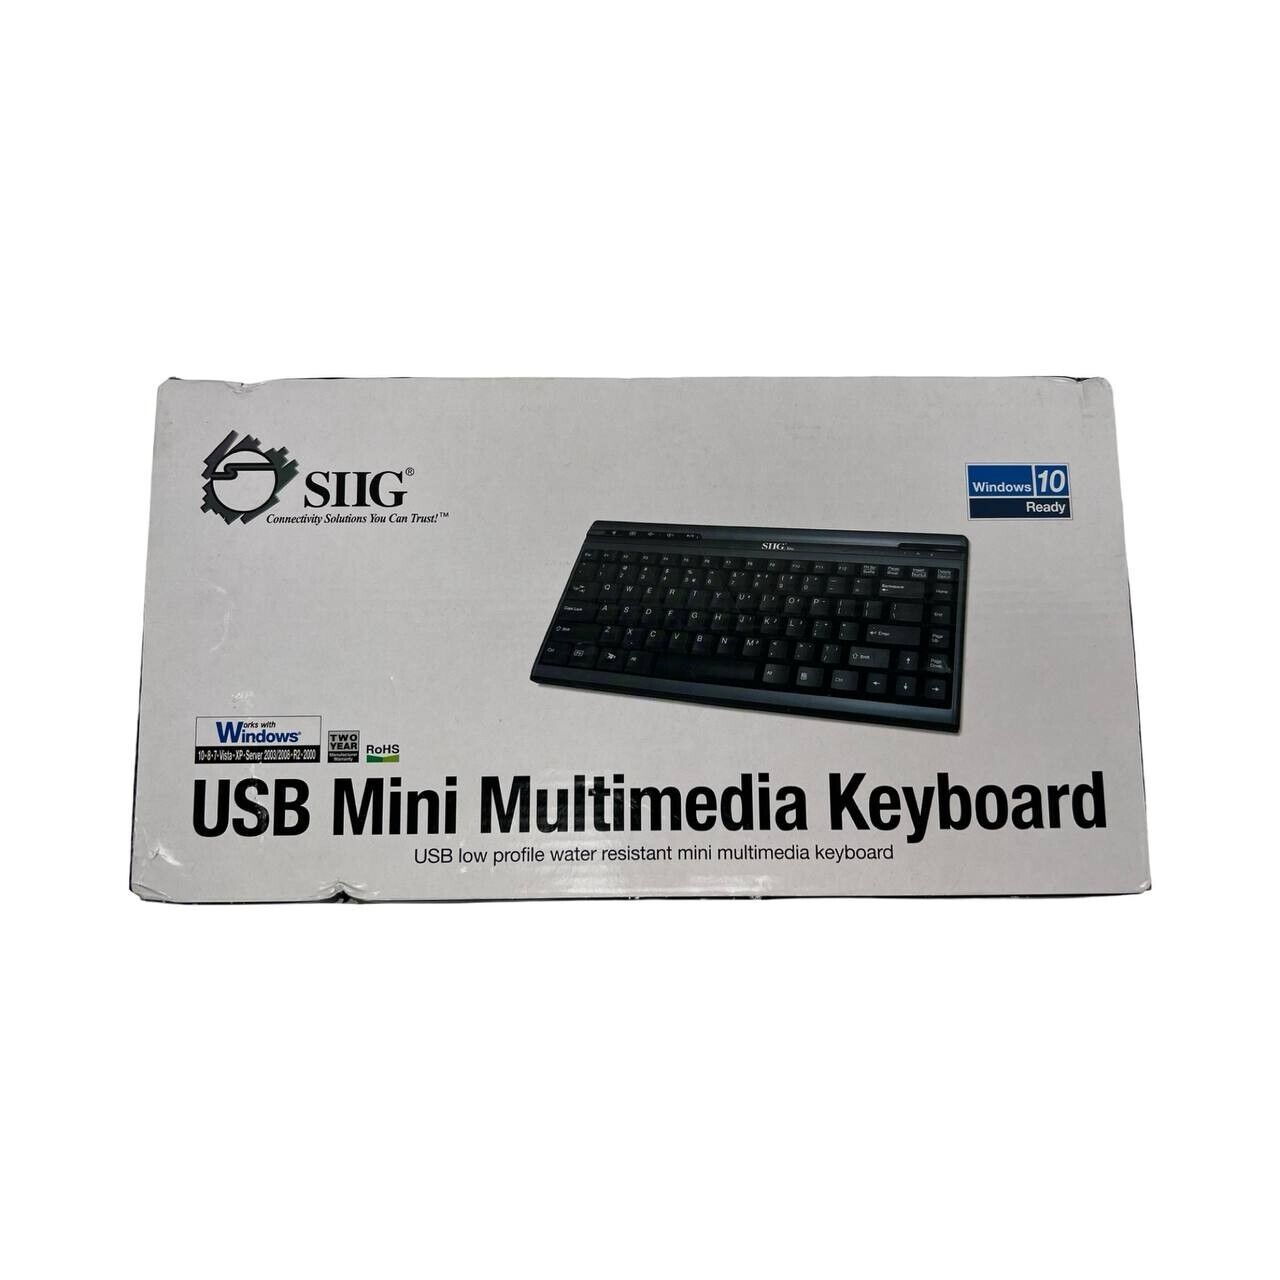 New SIIG JK-US0312-S1 USB Mini Multimedia Keyboard 